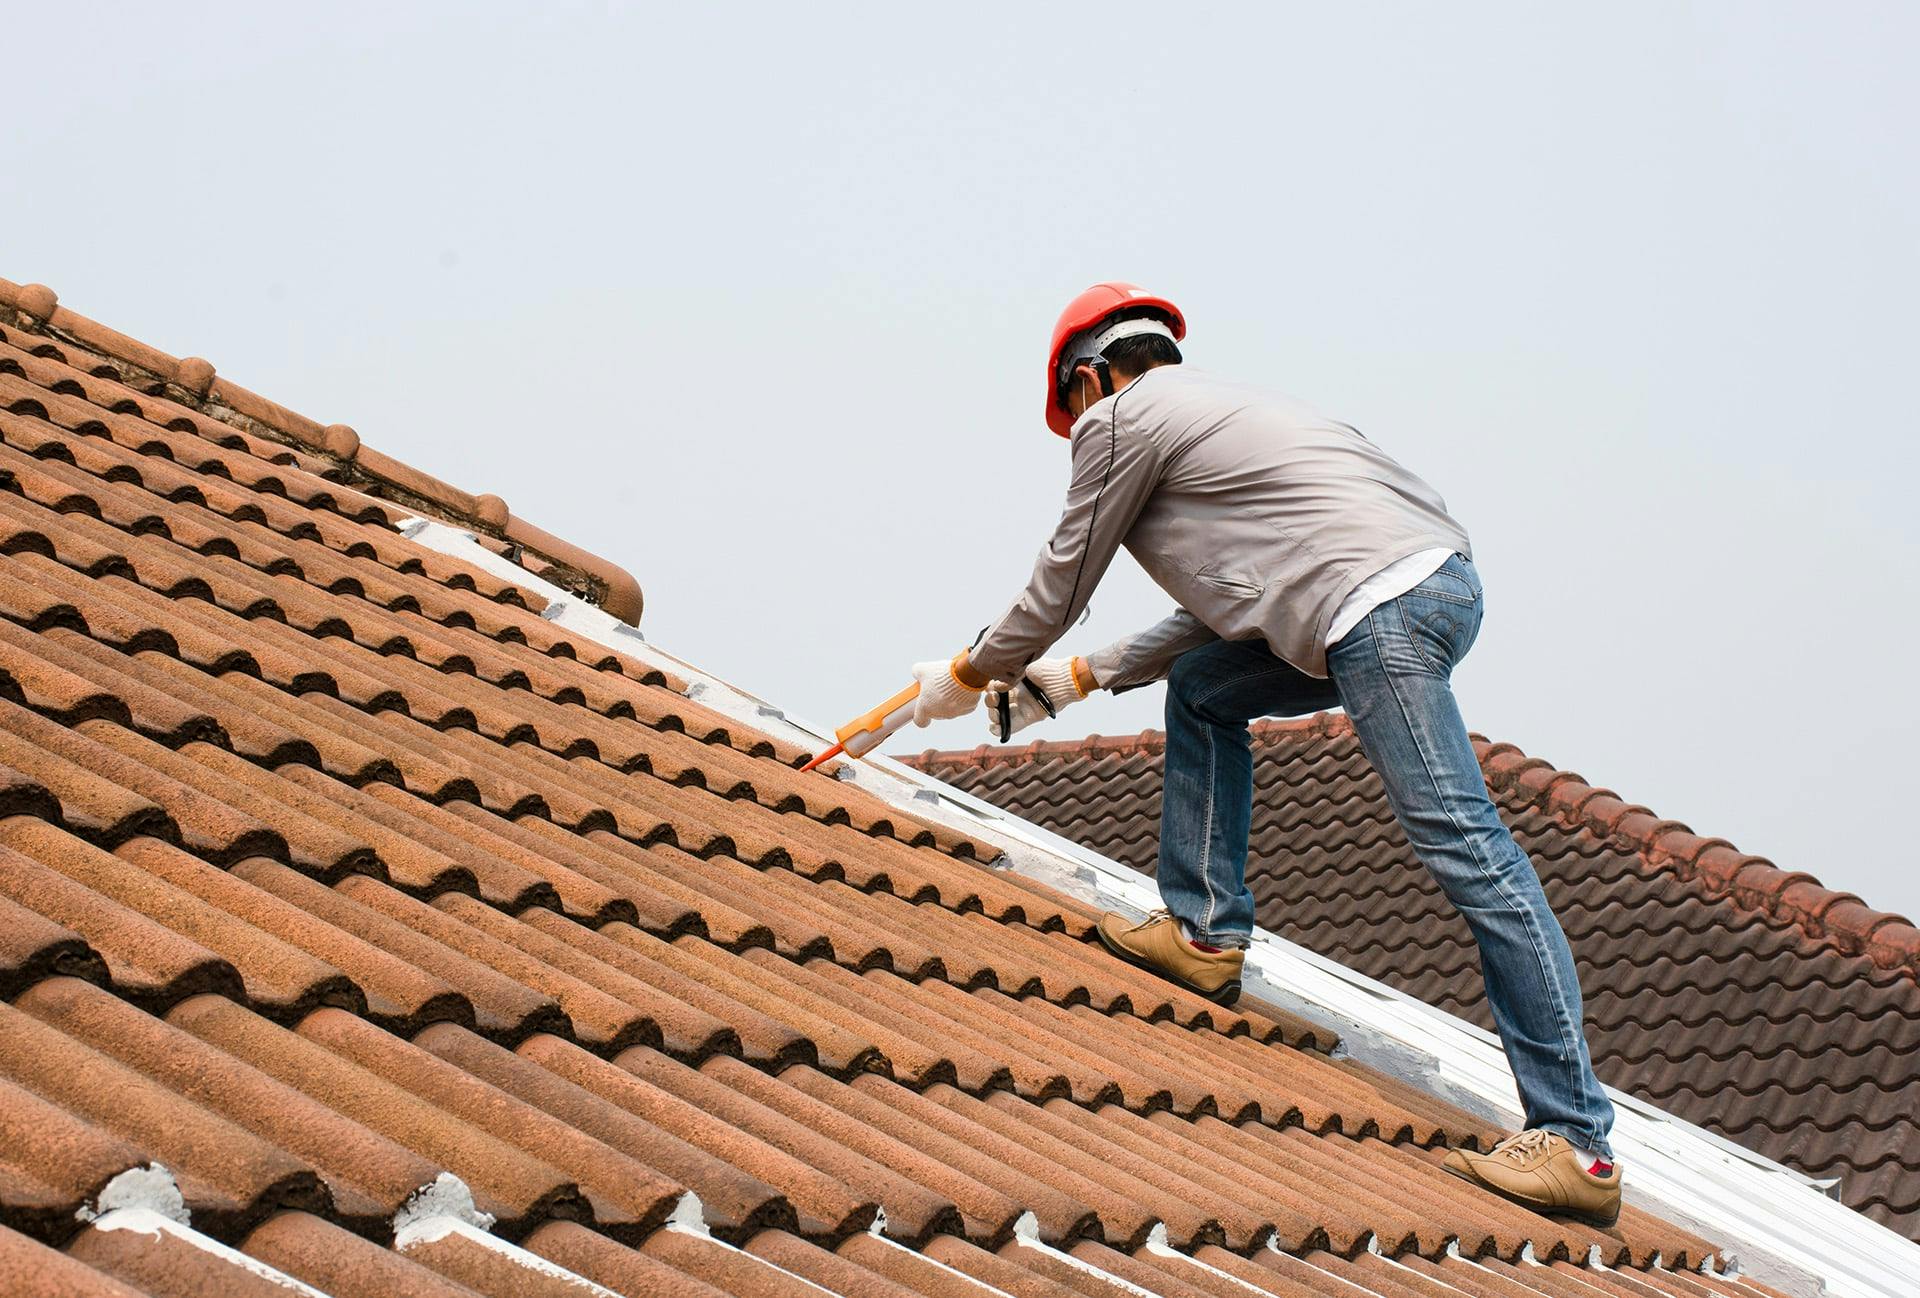 Installing Spanish Tile Roof